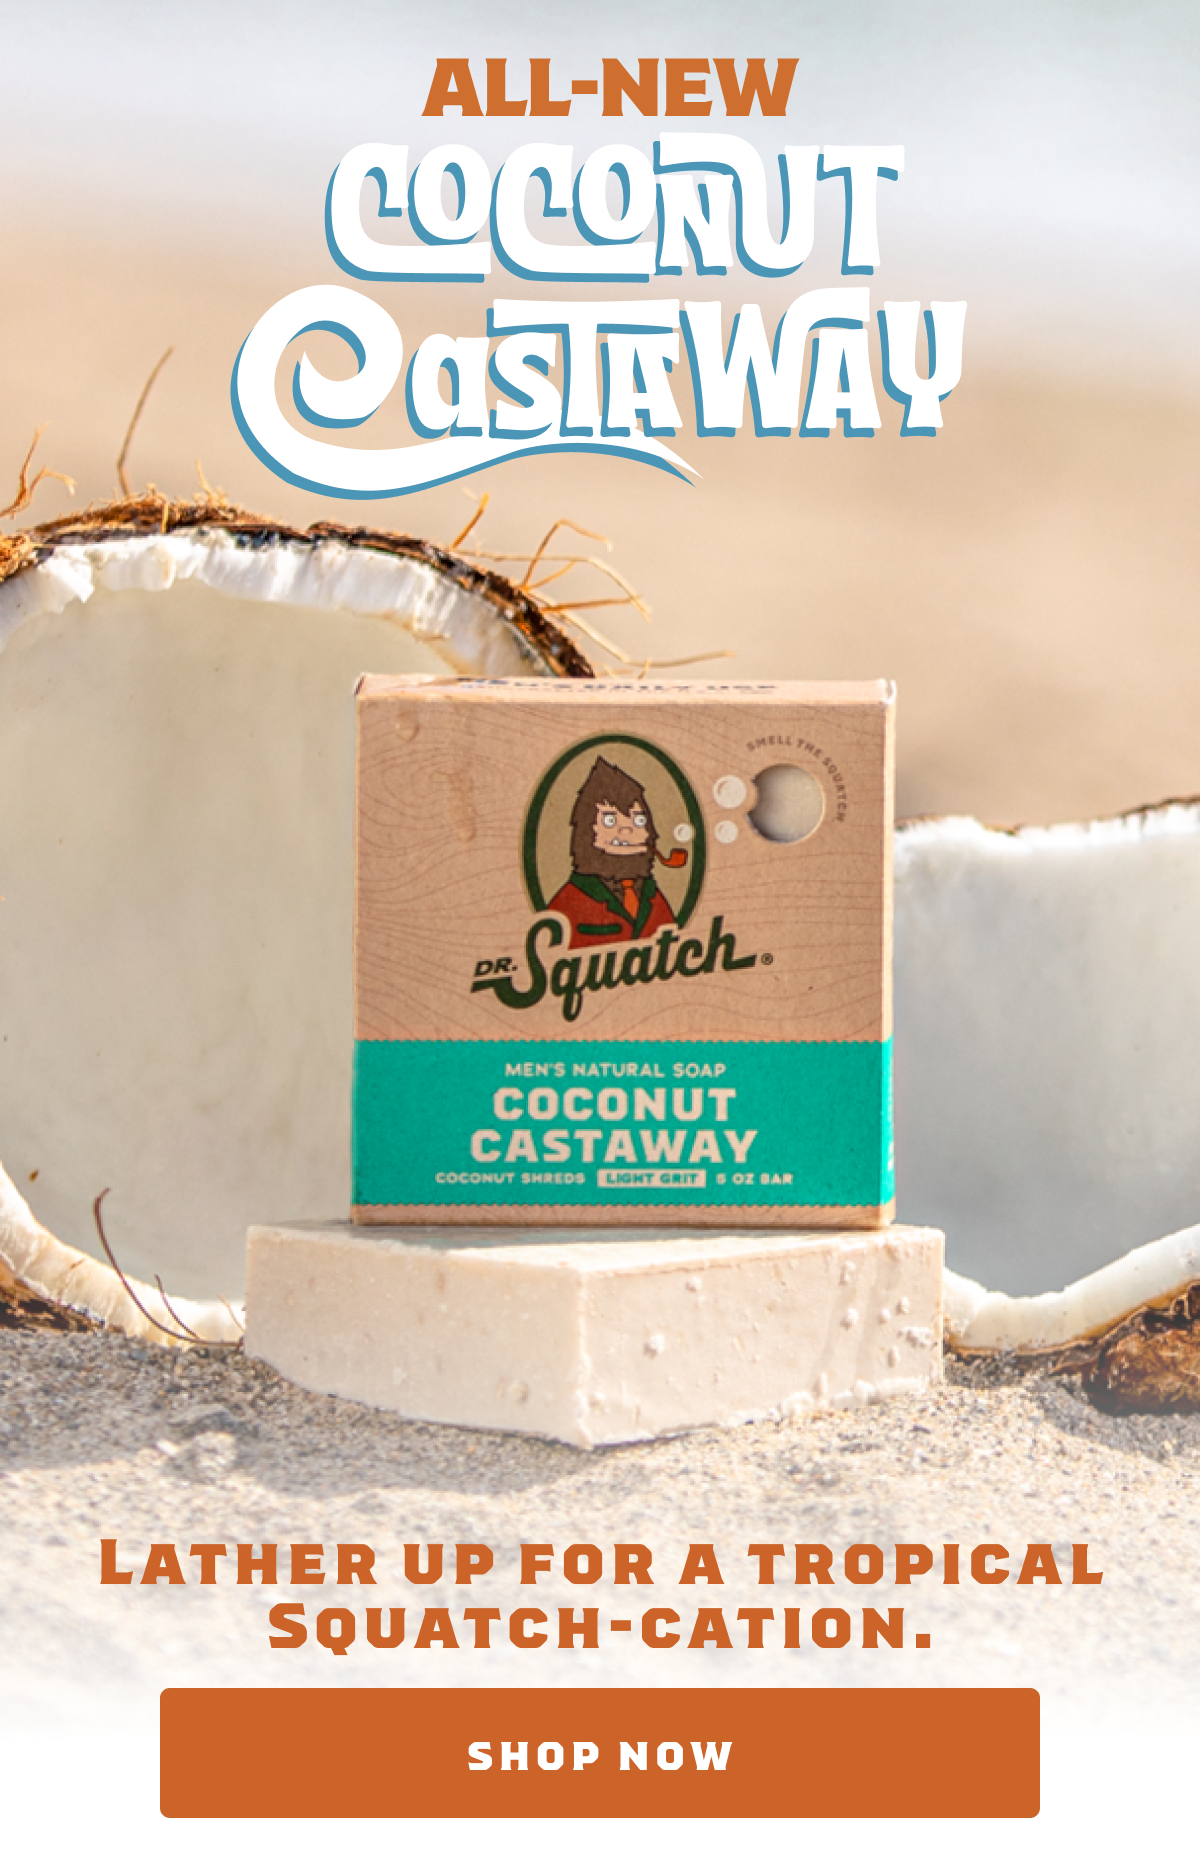 Dr. Squatch Coconut Castaway